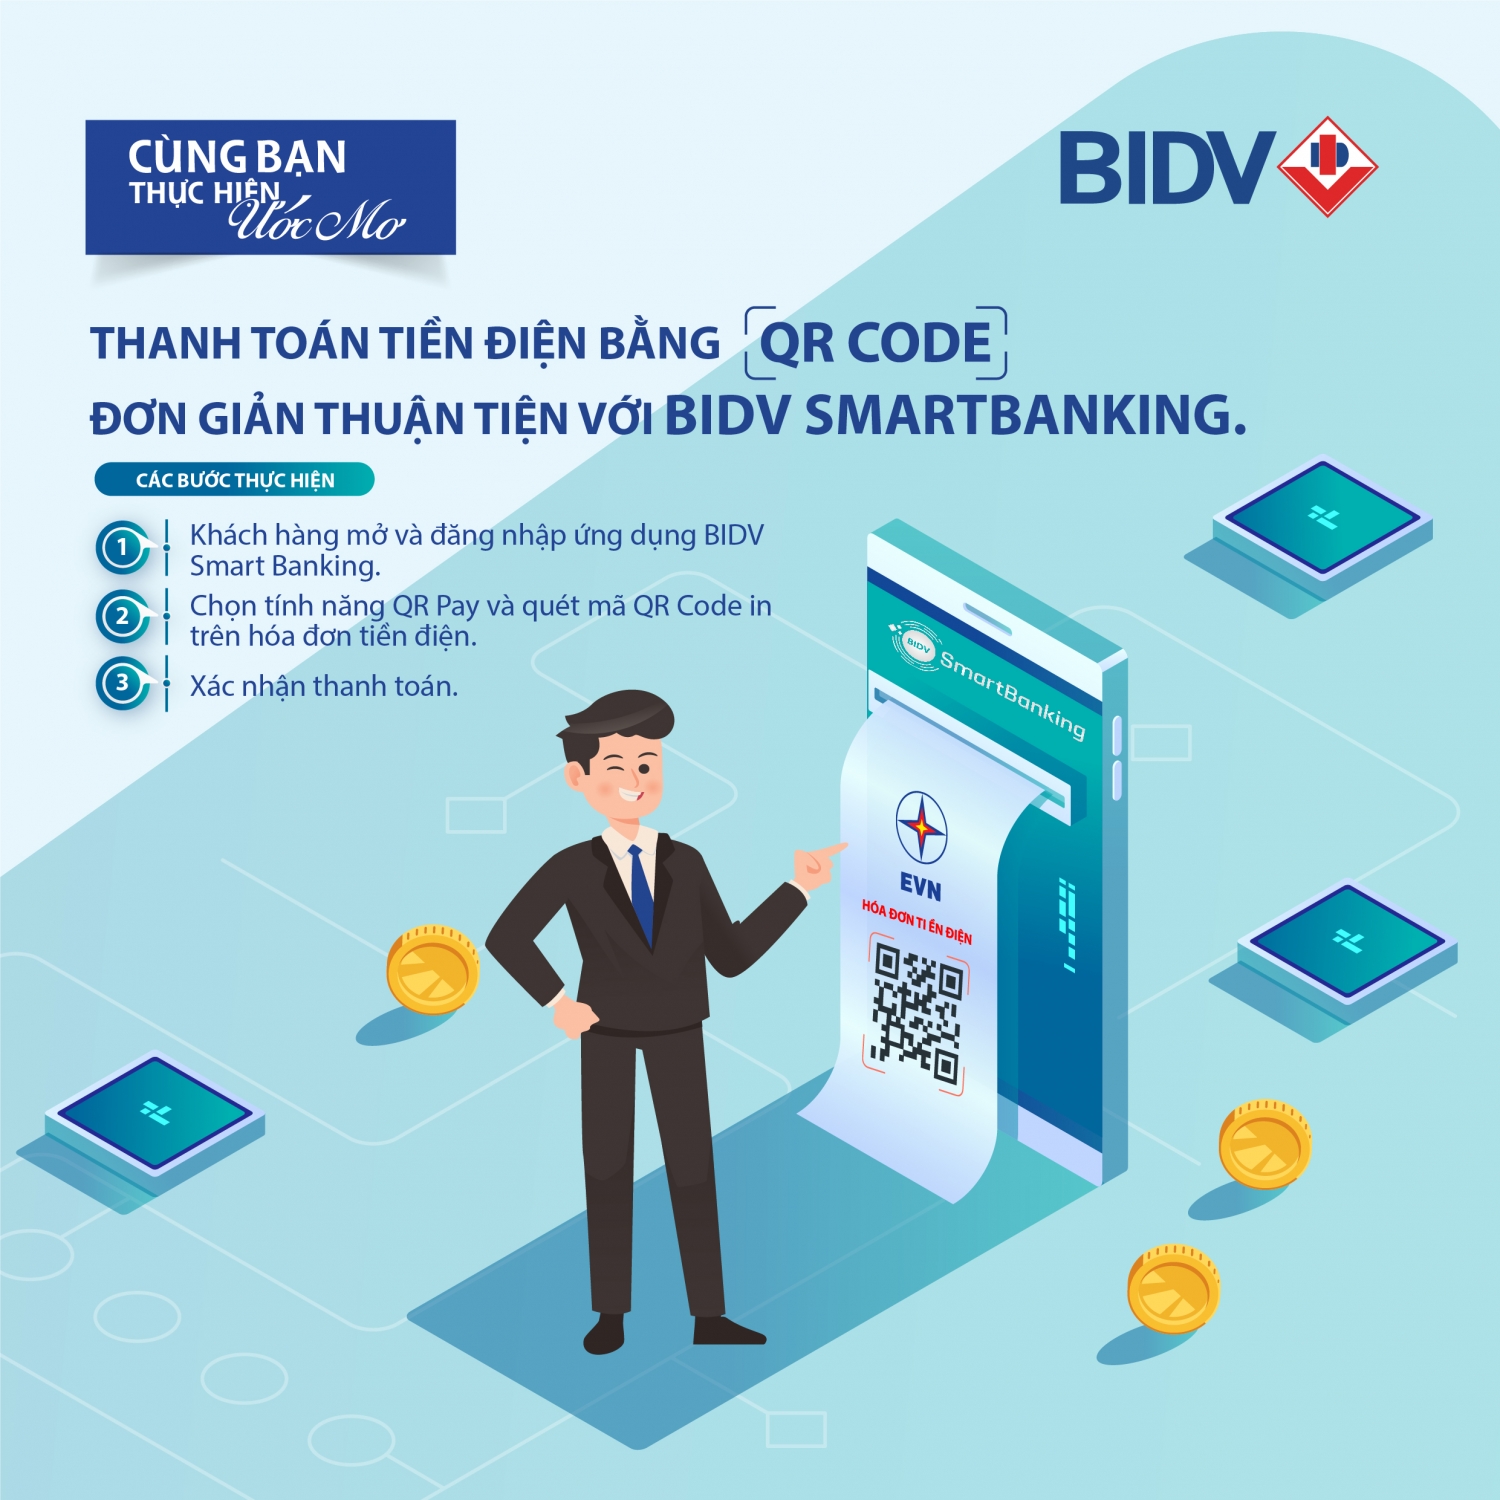 Thanh toán tiền điện bằng QR code - Đơn giản thuận tiện với BIDV Smartbanking